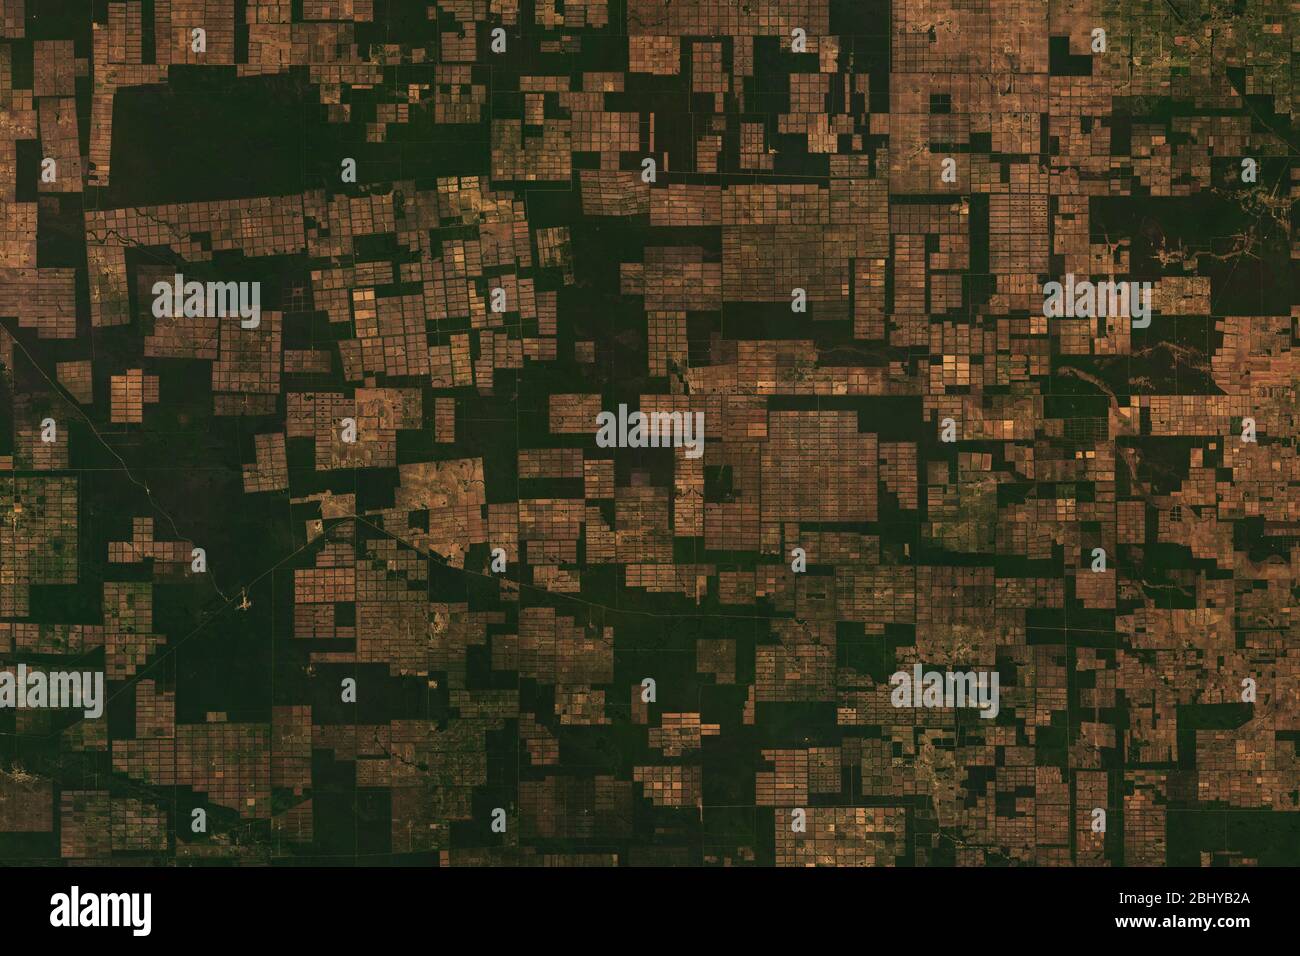 Image satellite haute résolution du modèle de déforestation à Gran Chaco, au Paraguay - contient les données sentinelles Copernic modifiées (2020) Banque D'Images